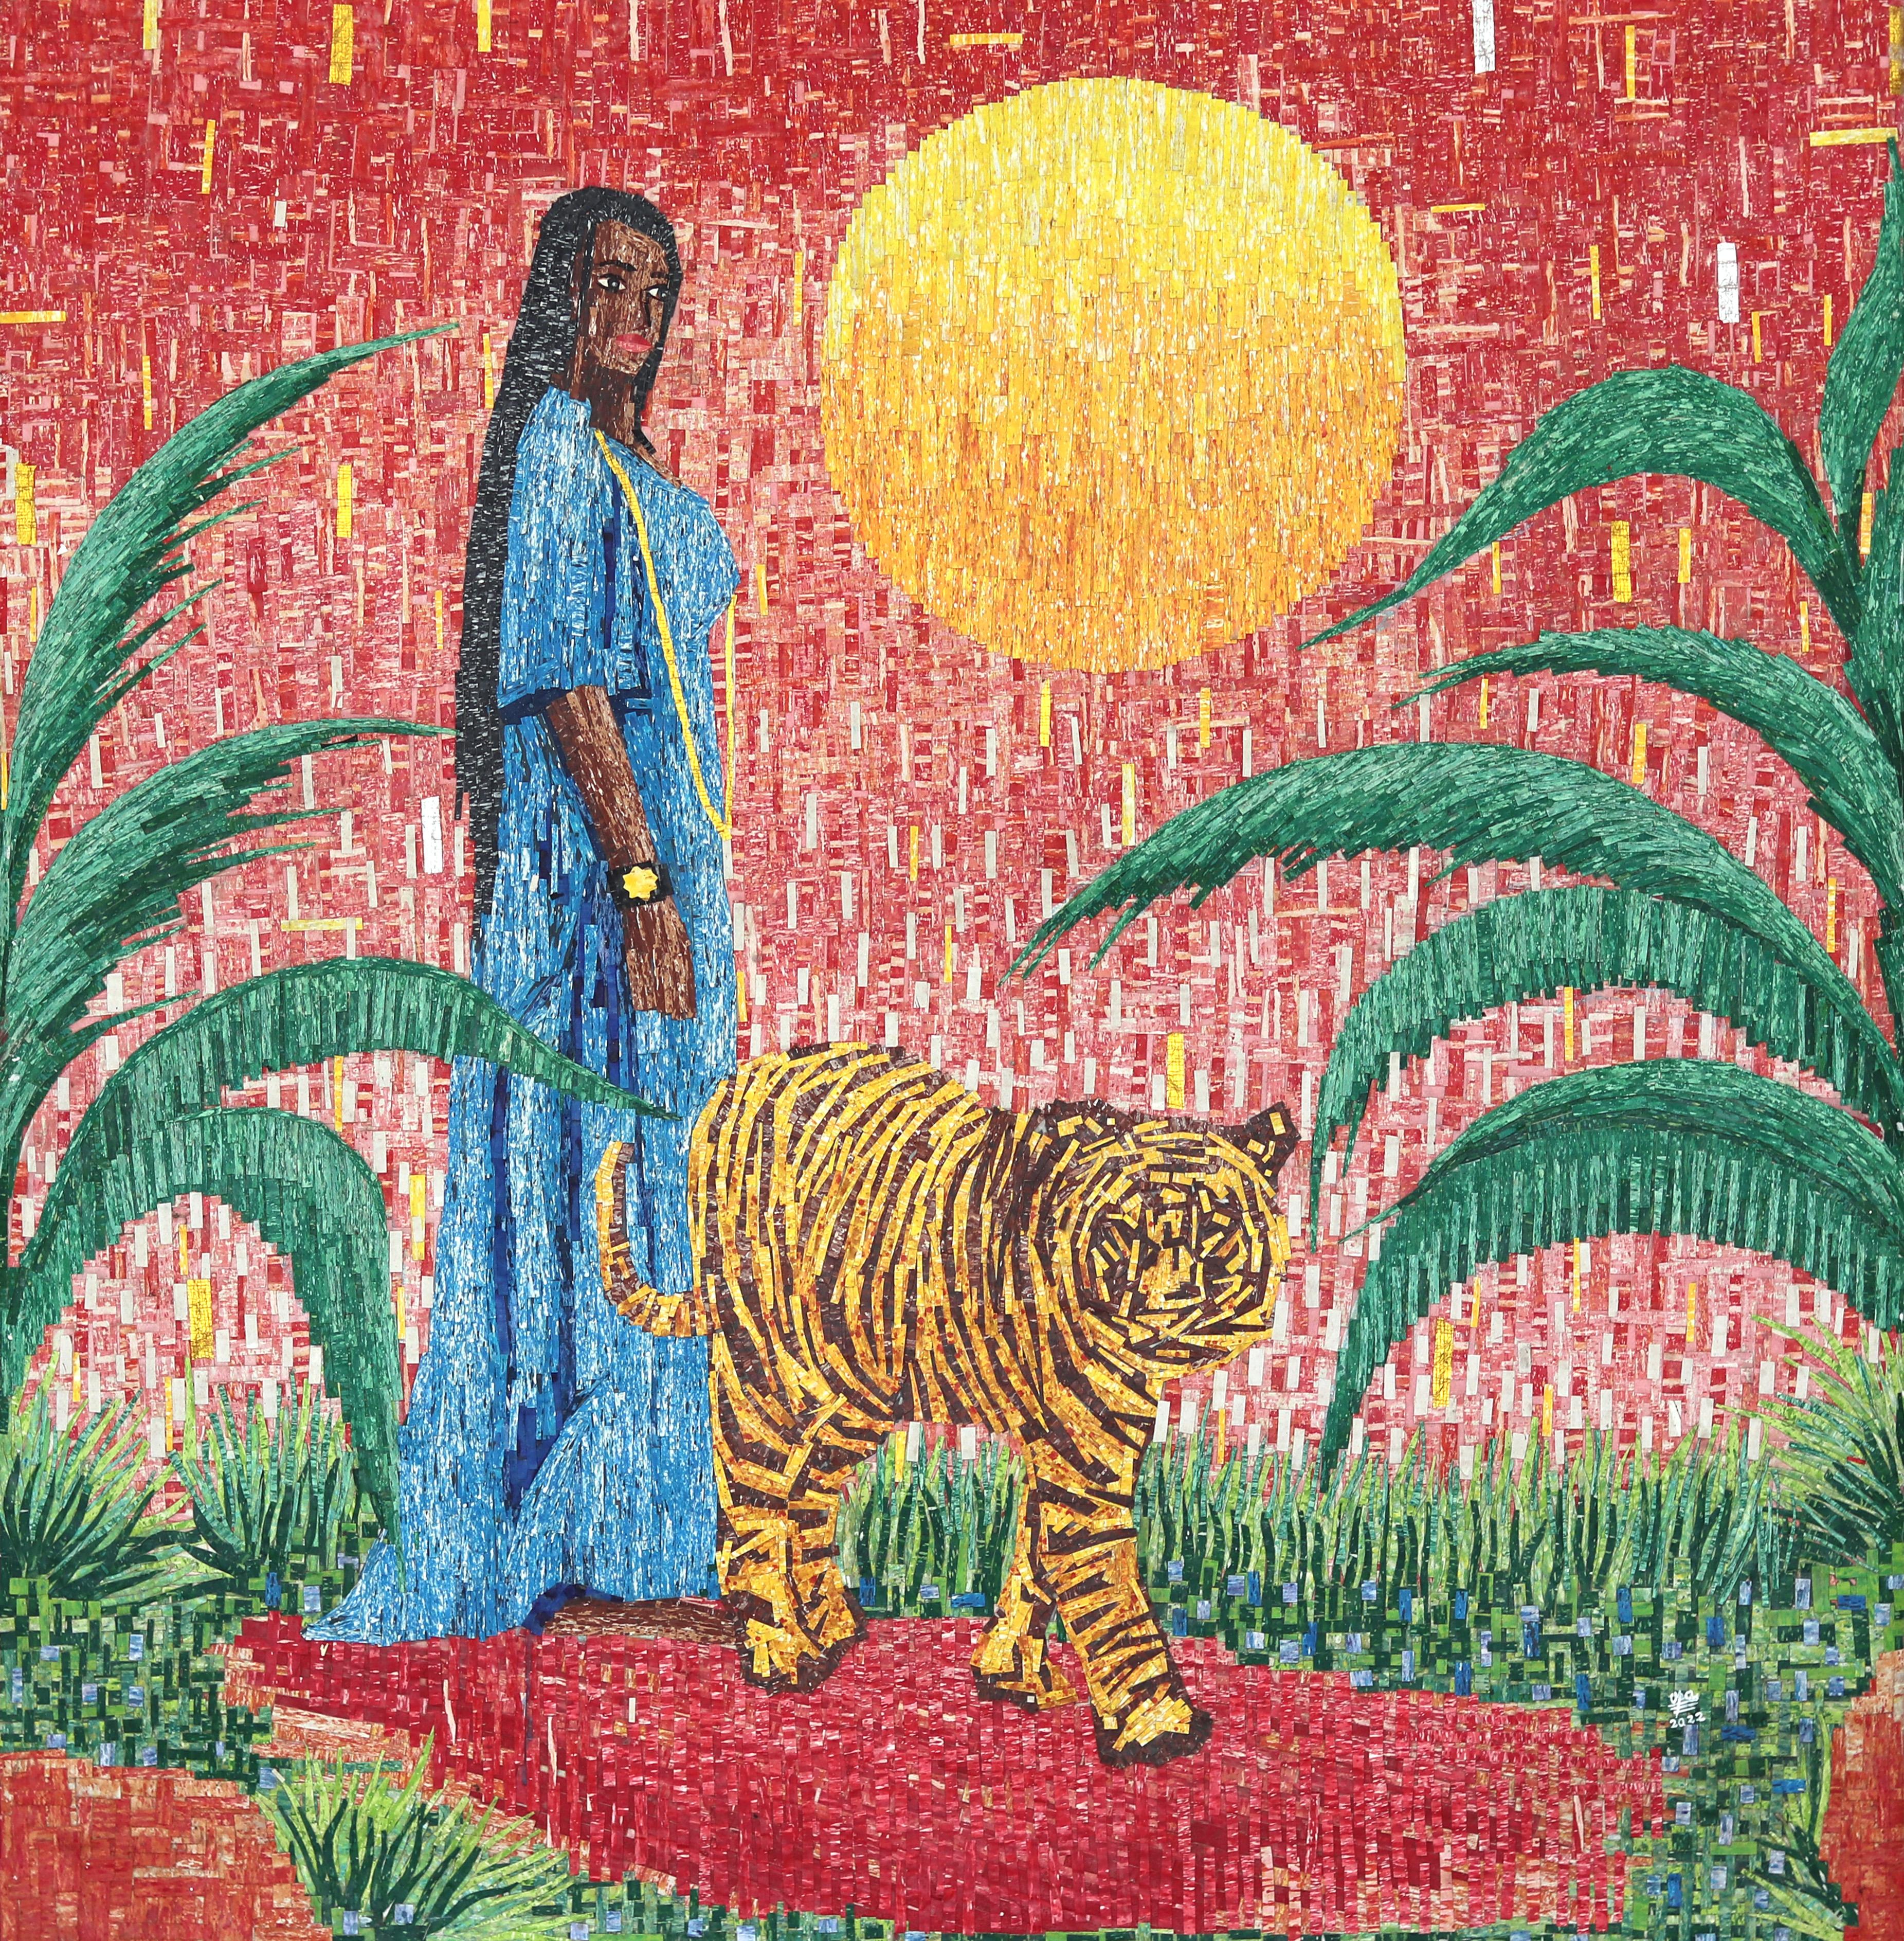 Portrait Painting Amadou Opa Bathily - La Belle et La Bête - Tableau figuratif coloré en techniques mixtes sur toile